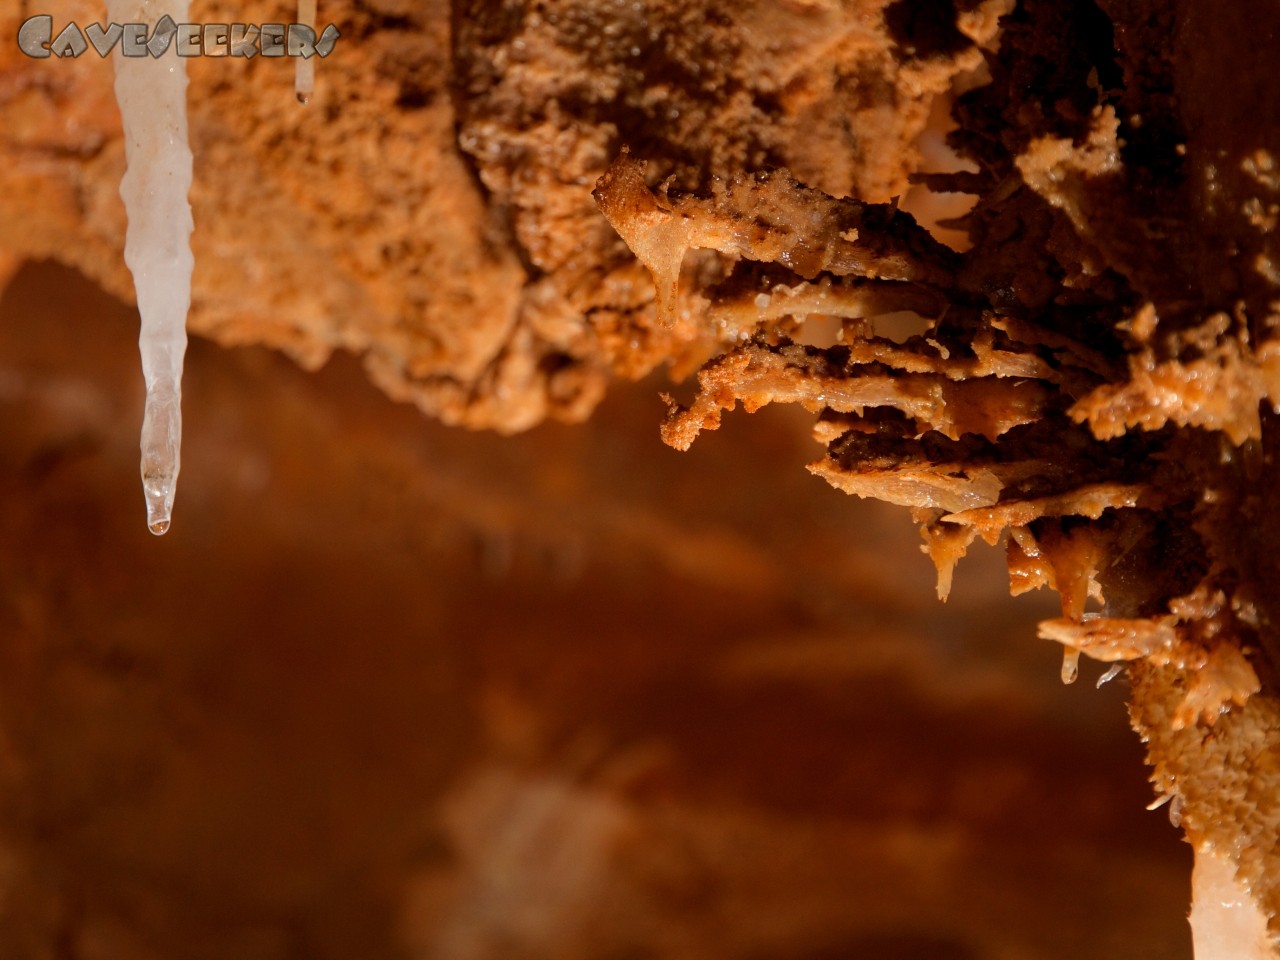 Grotta del Fico: Es fängt langsam an.